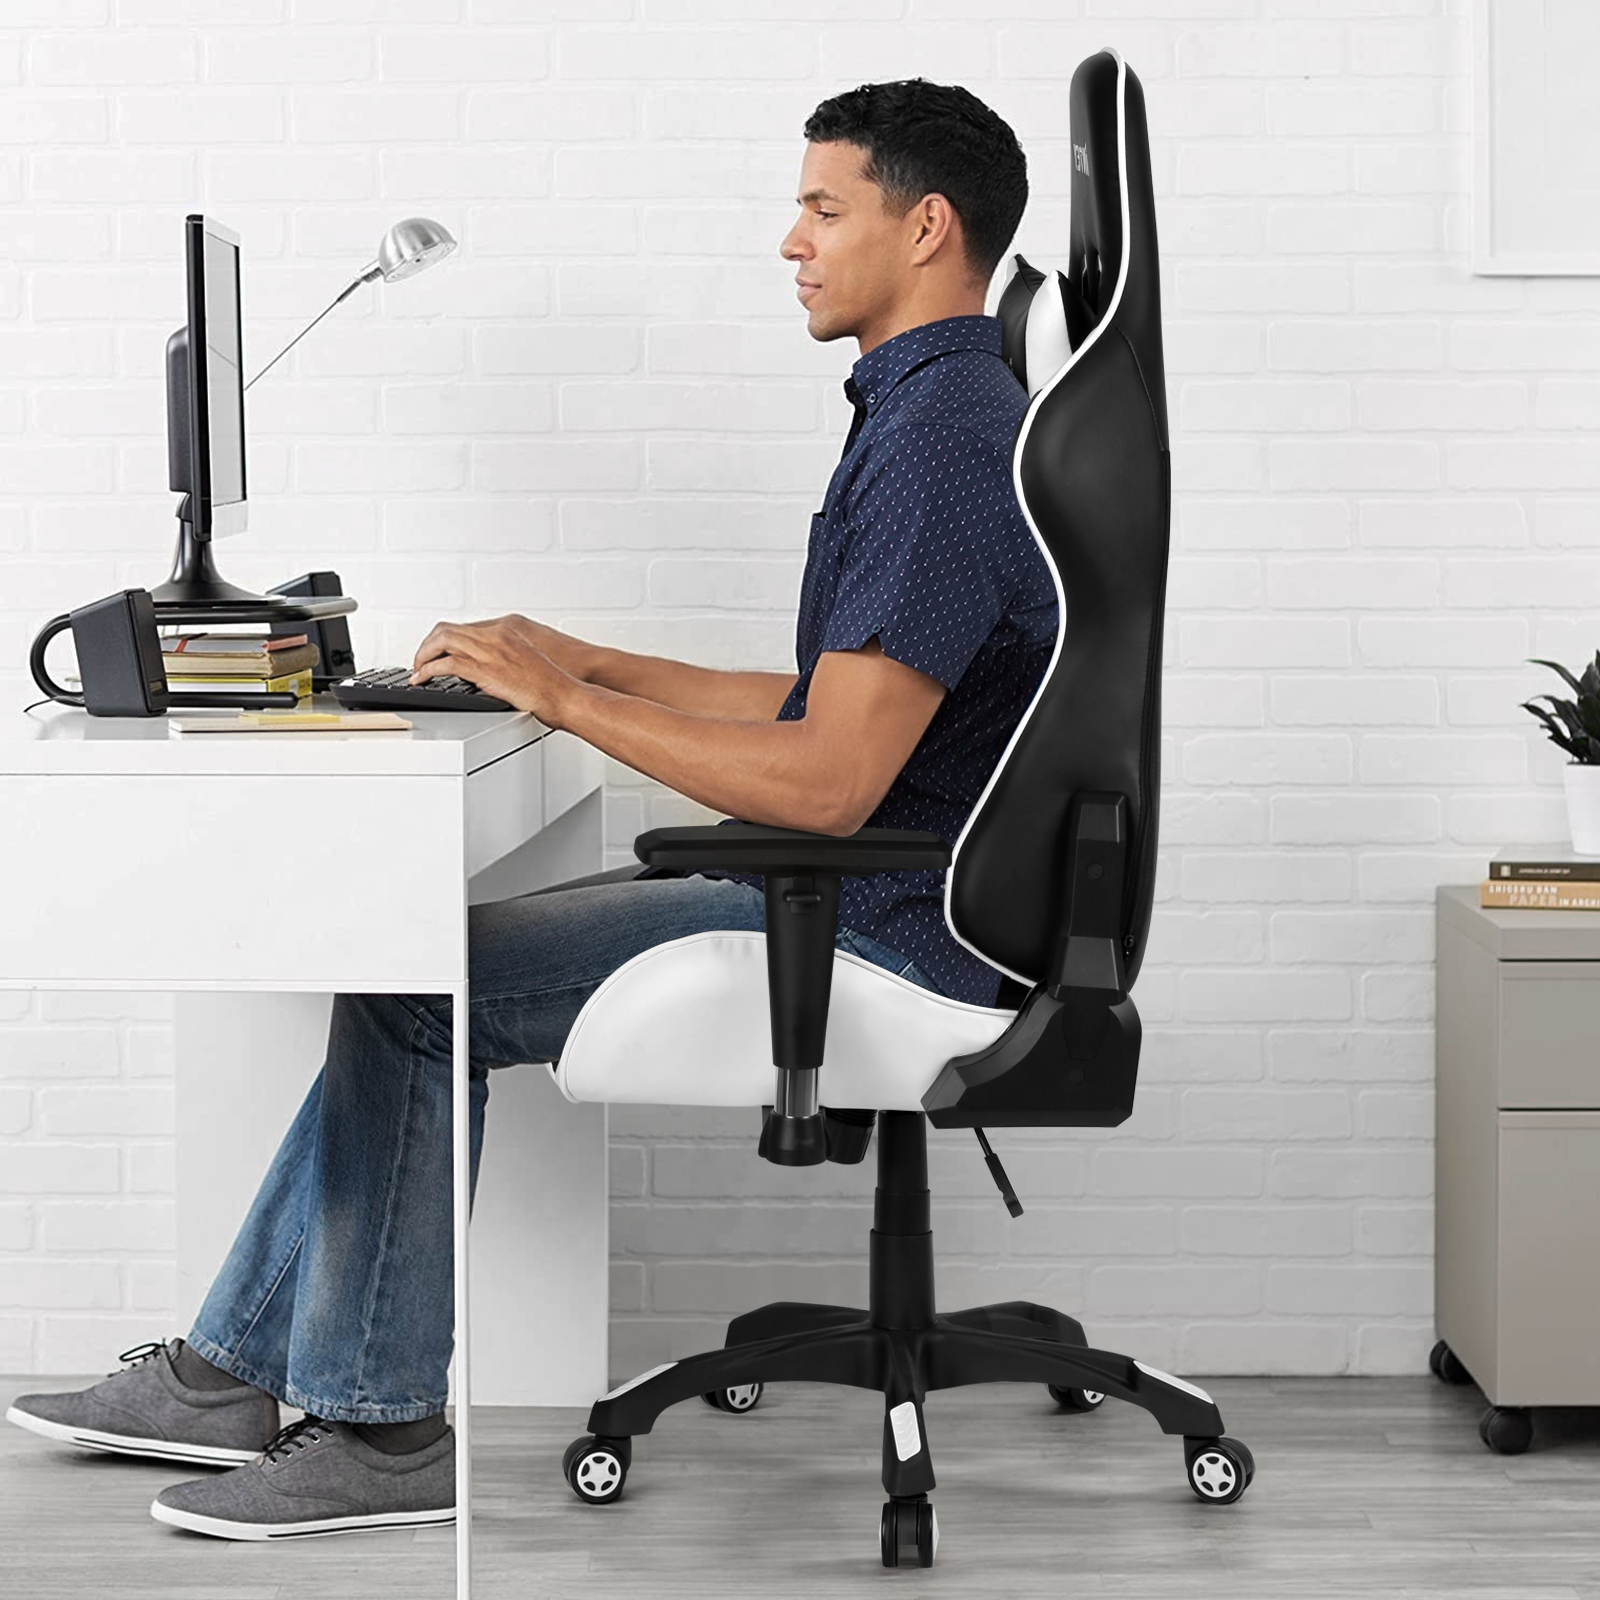 FOXSPORT Professioneller Stuhl, Gaming Taillenkissen, mit Kopfstütze Schwarz/Weiß und Bürostuhl, weiß Gaming-Stuhl